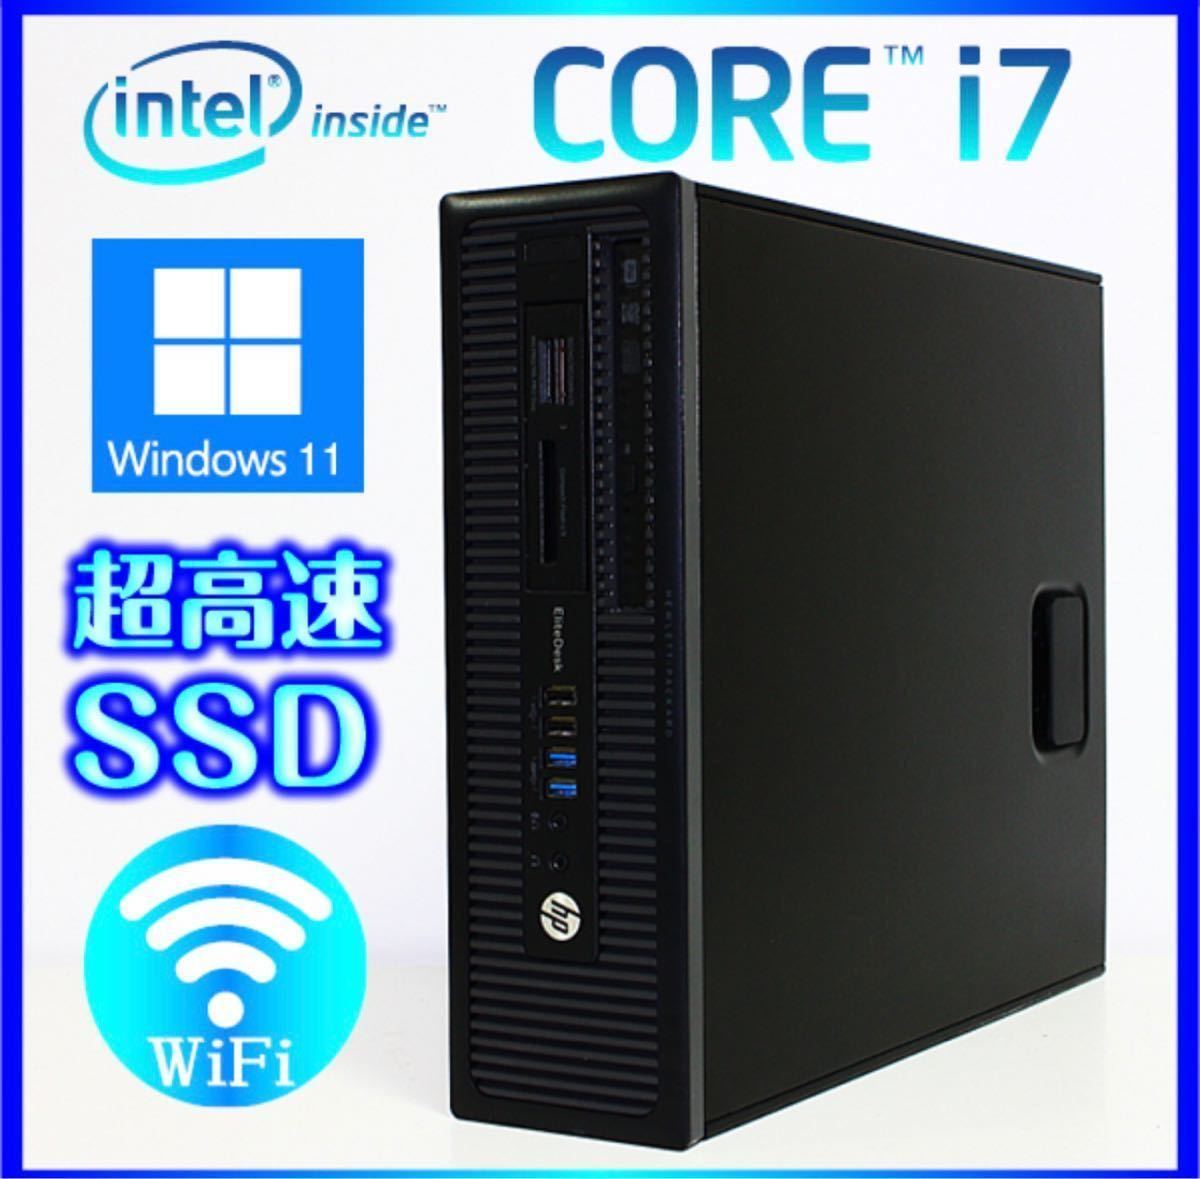 一番人気物 /SSD i7-4790 Core Win11 HP 256GB /Bluetooth /無線Wi-Fi